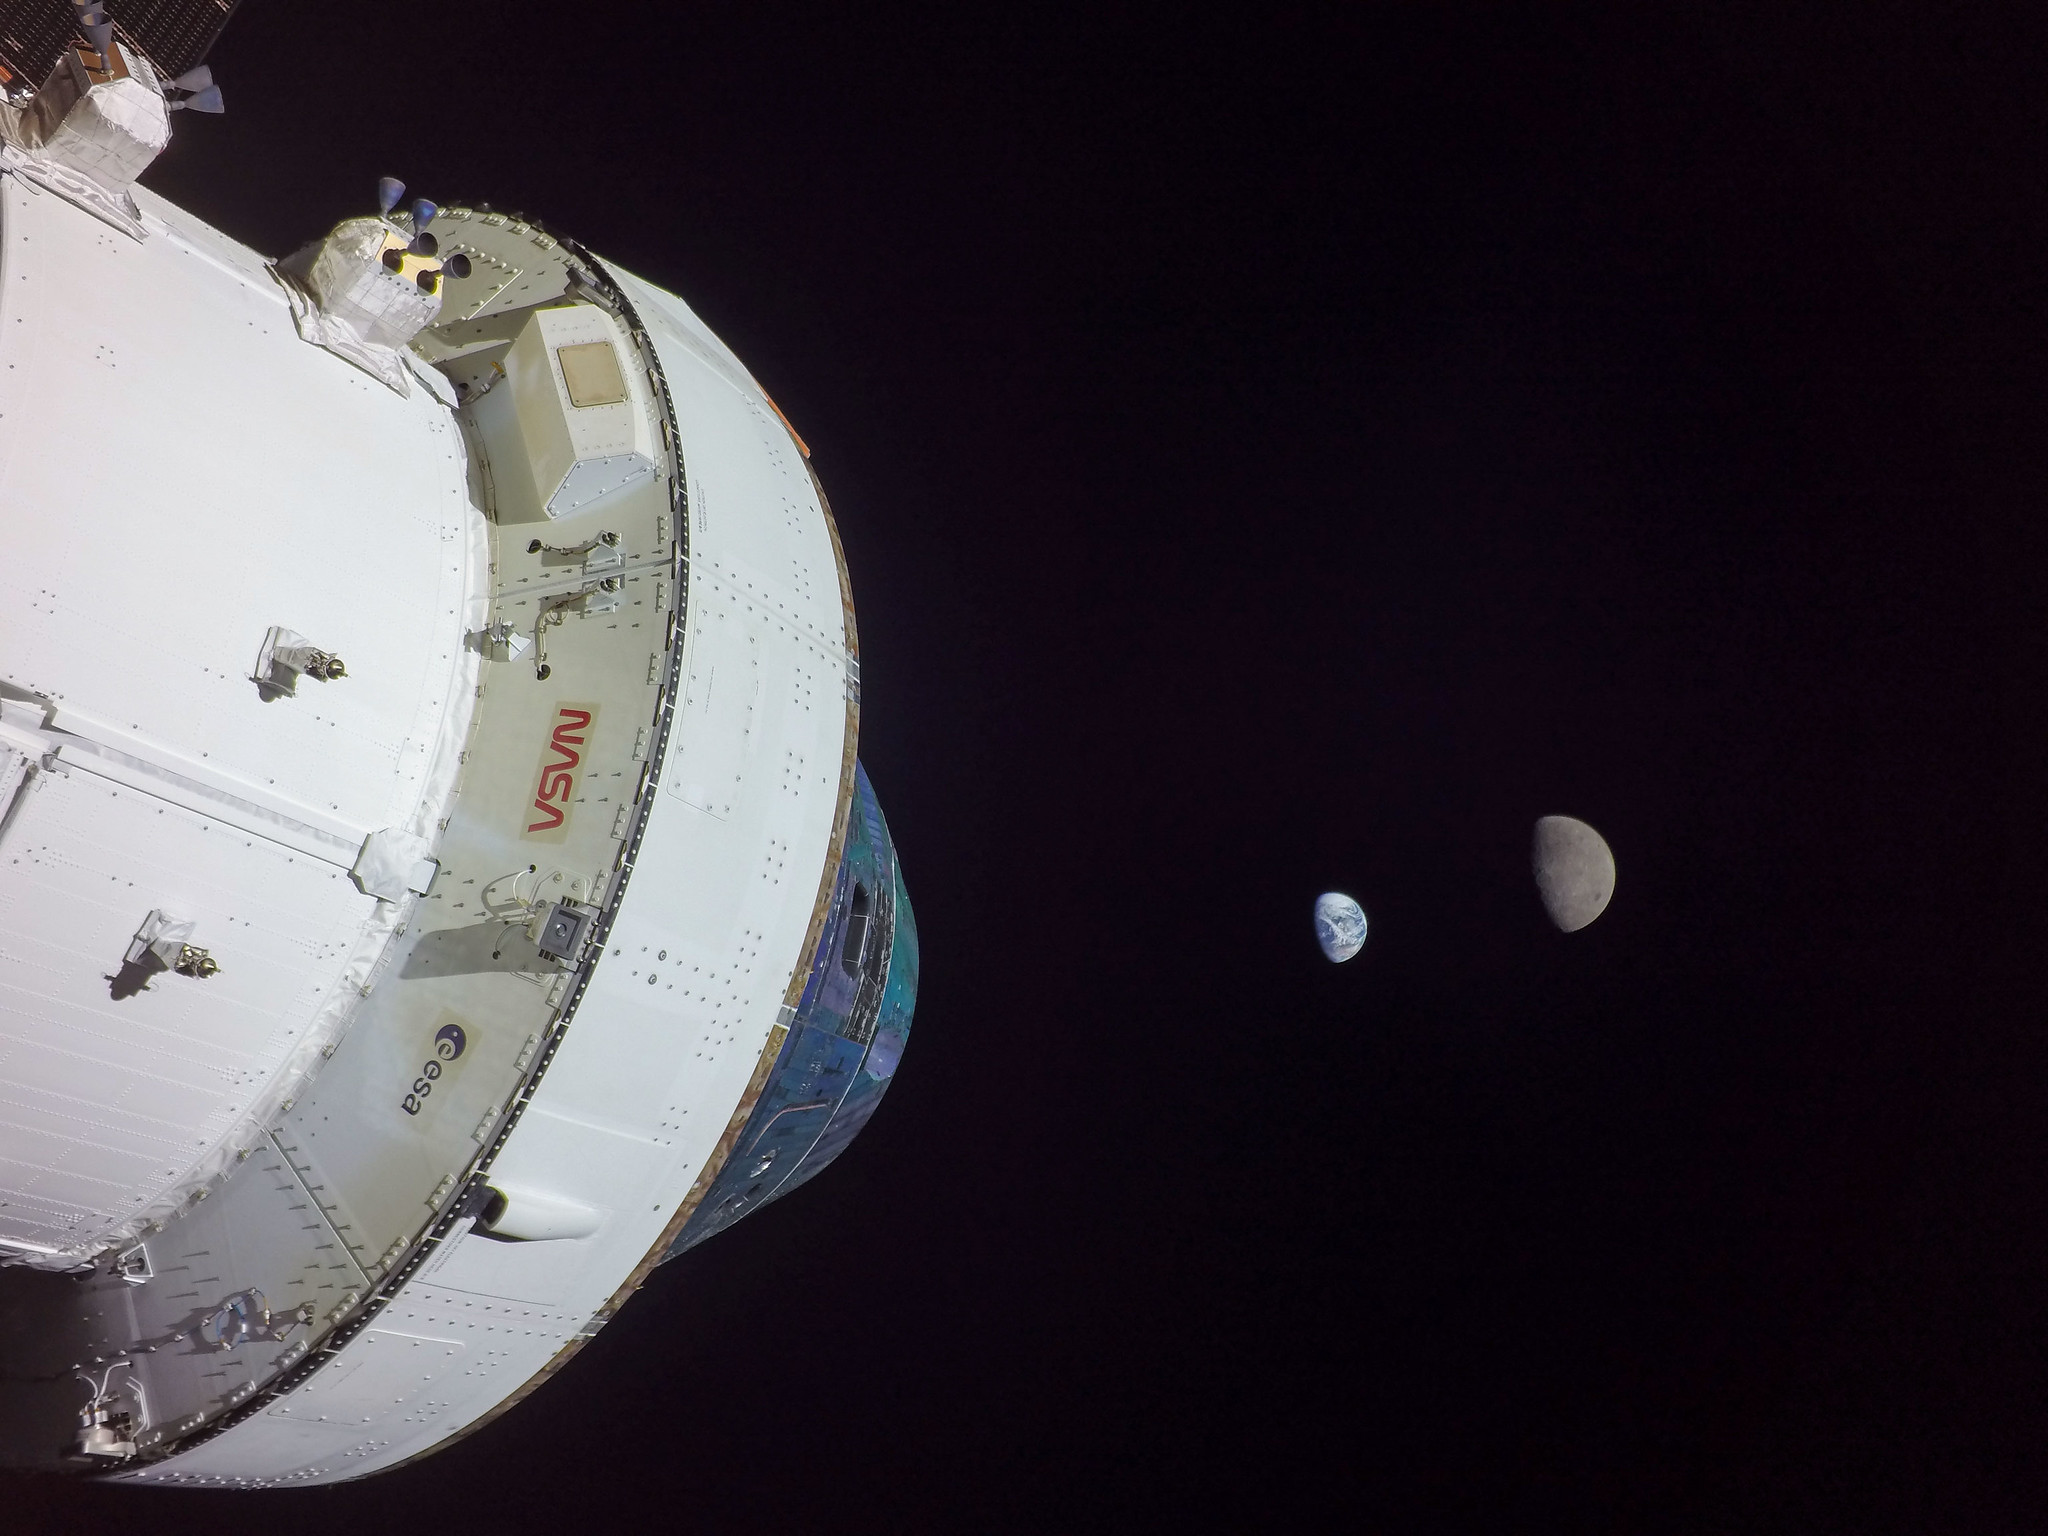 Foto de la Tierra y la Luna tomada por la misión Orion - Foto de la Tierra y la Luna tomada por la misión Orion - Foto de la Tierra y la Luna tomada por la misión Orion